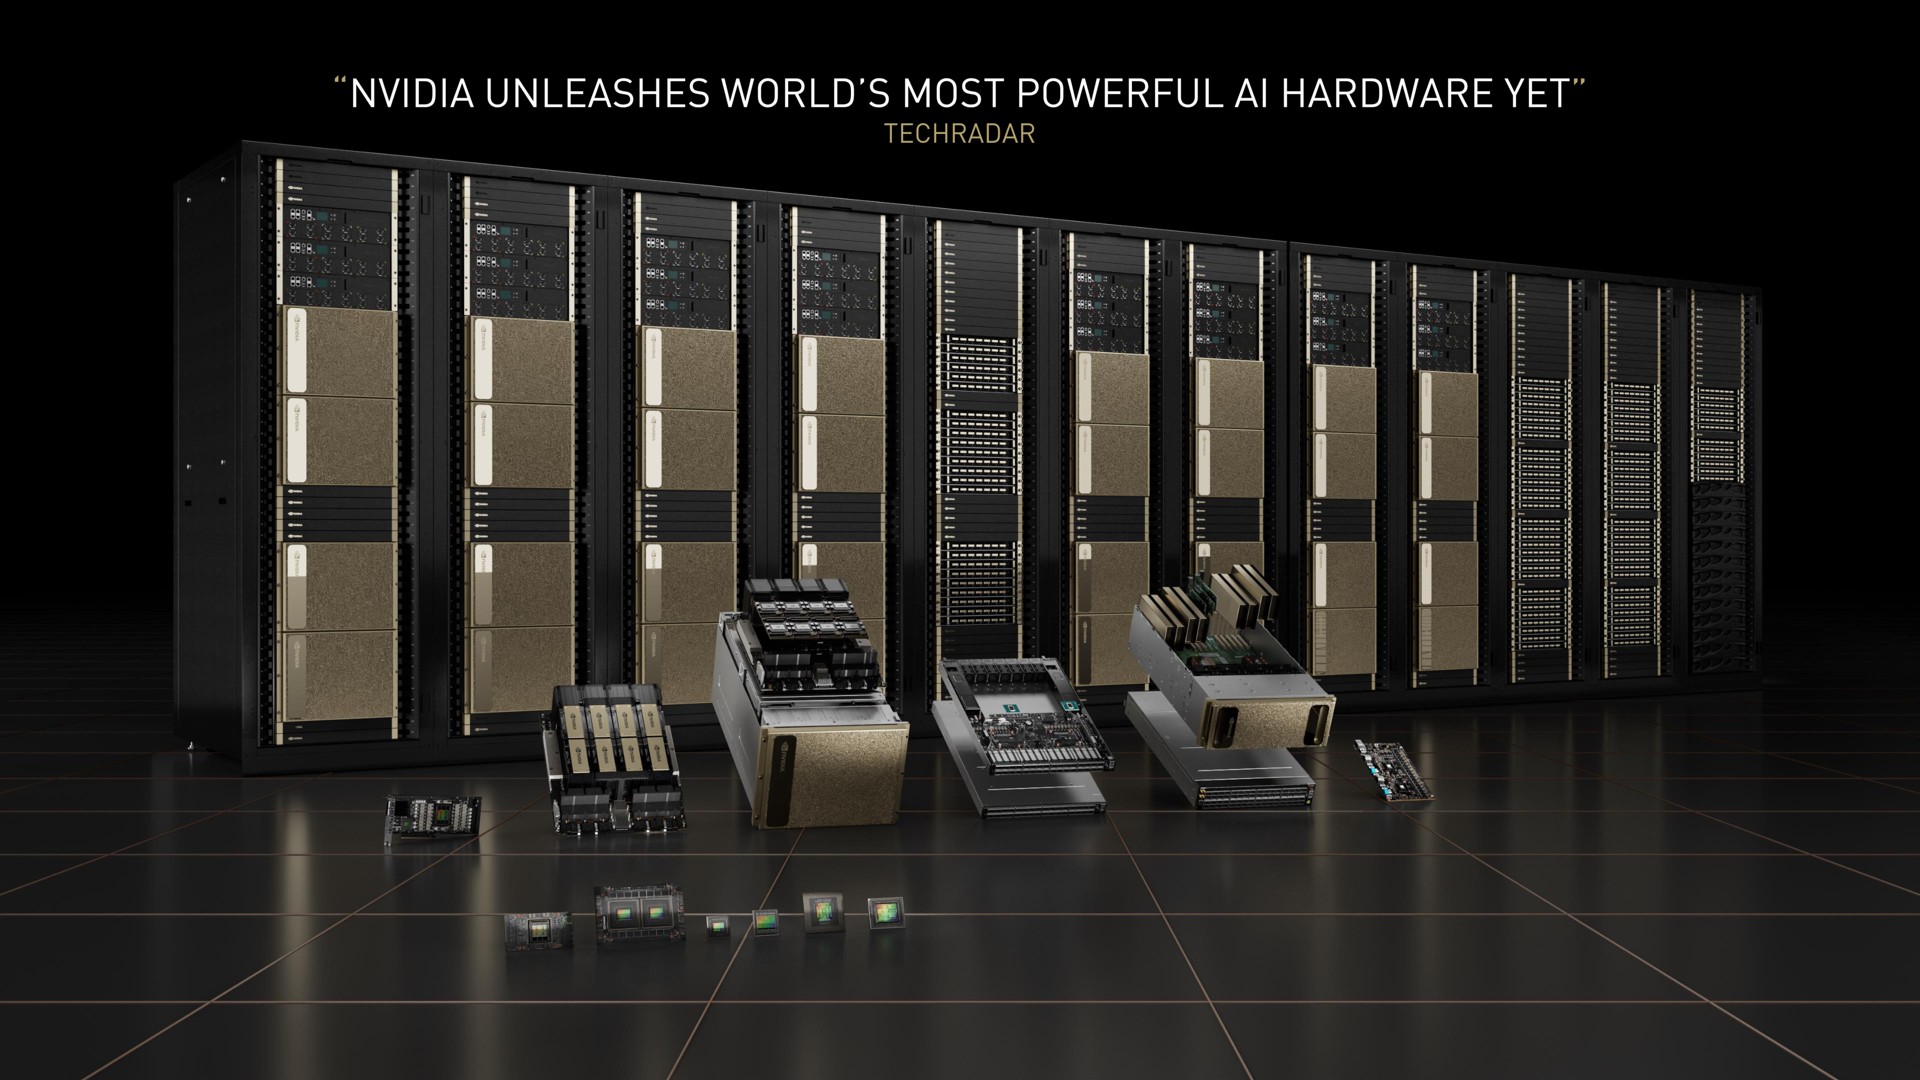 unleashes world most powerful hardware yet | NVIDIA